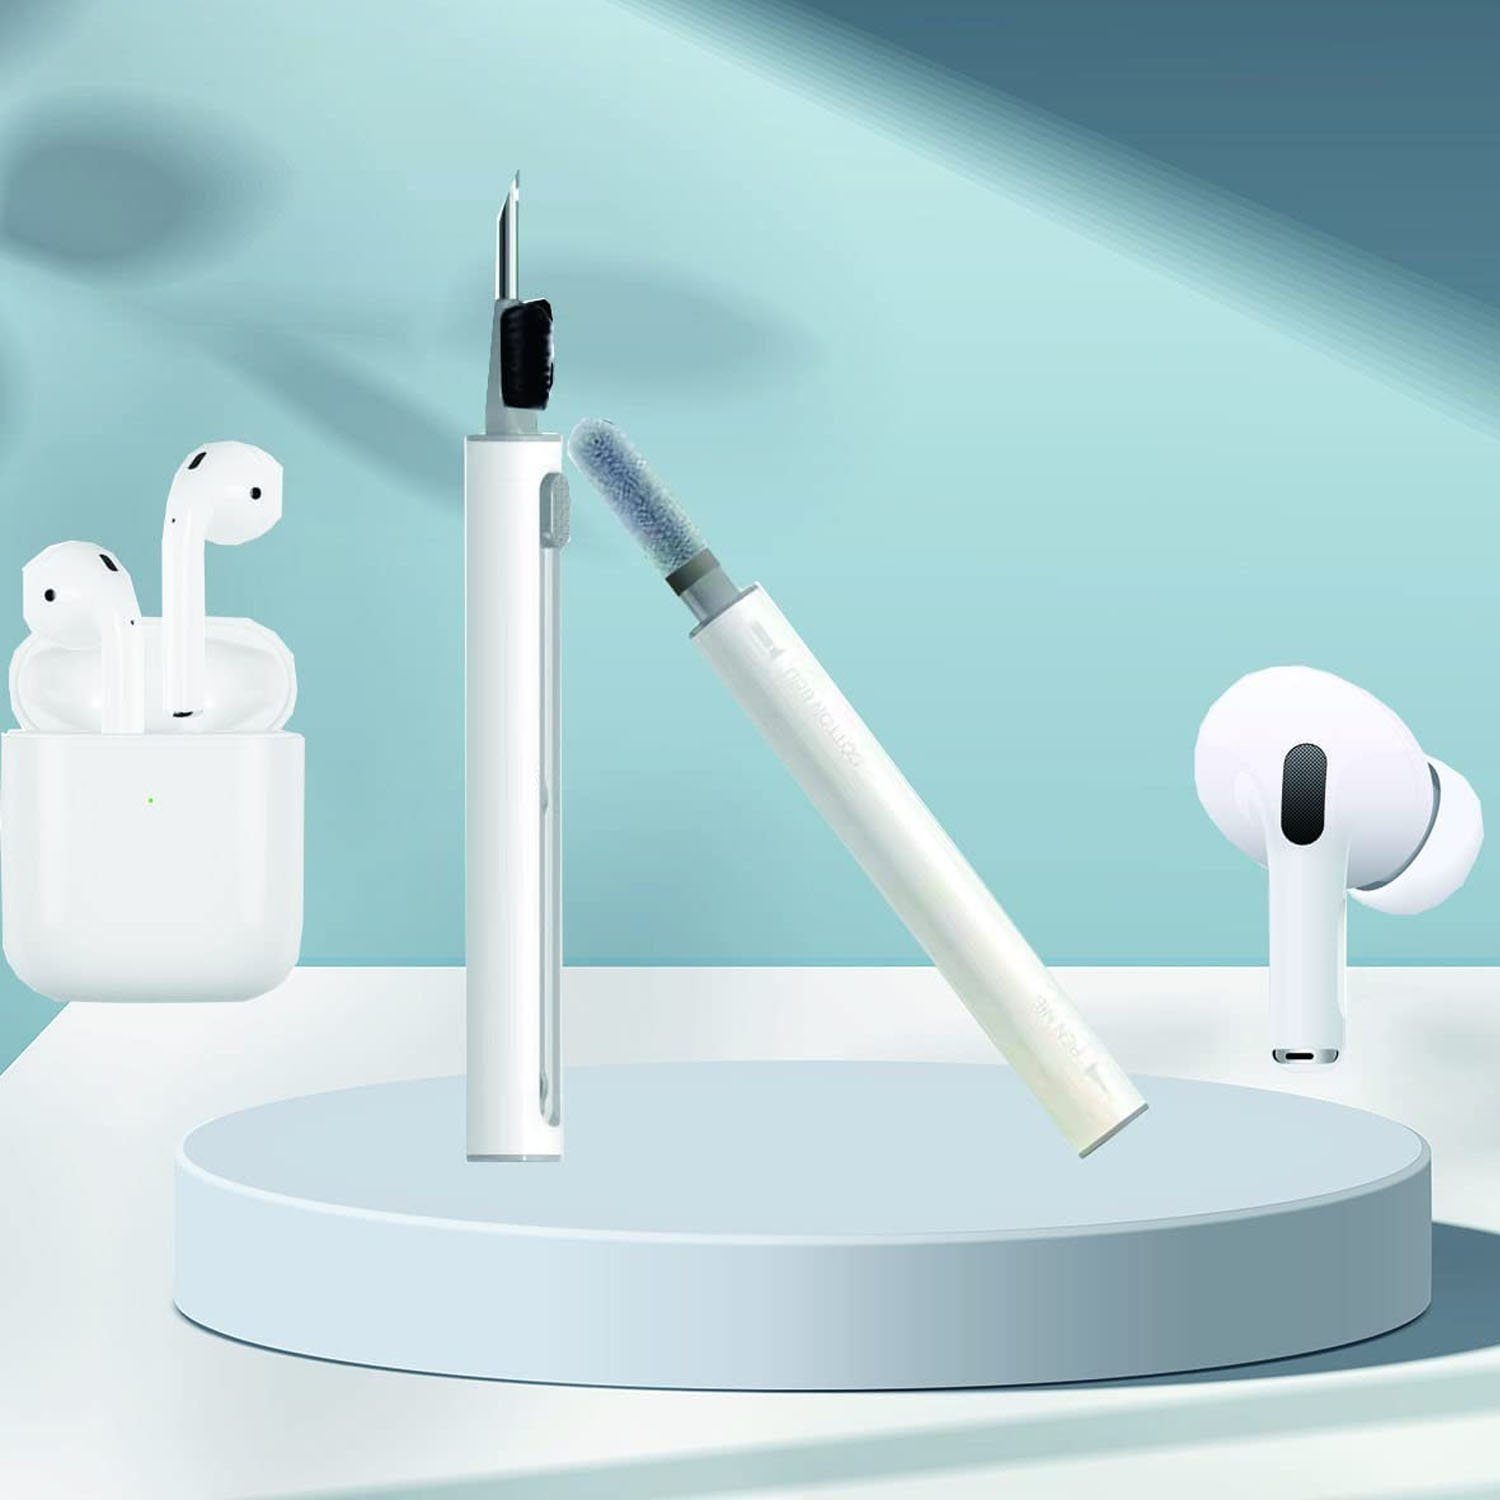 Bluetooth autolock für Kopfhörer Reinigungsbürsten-Set für Airpods Earbuds, Reinigungsset Samsung